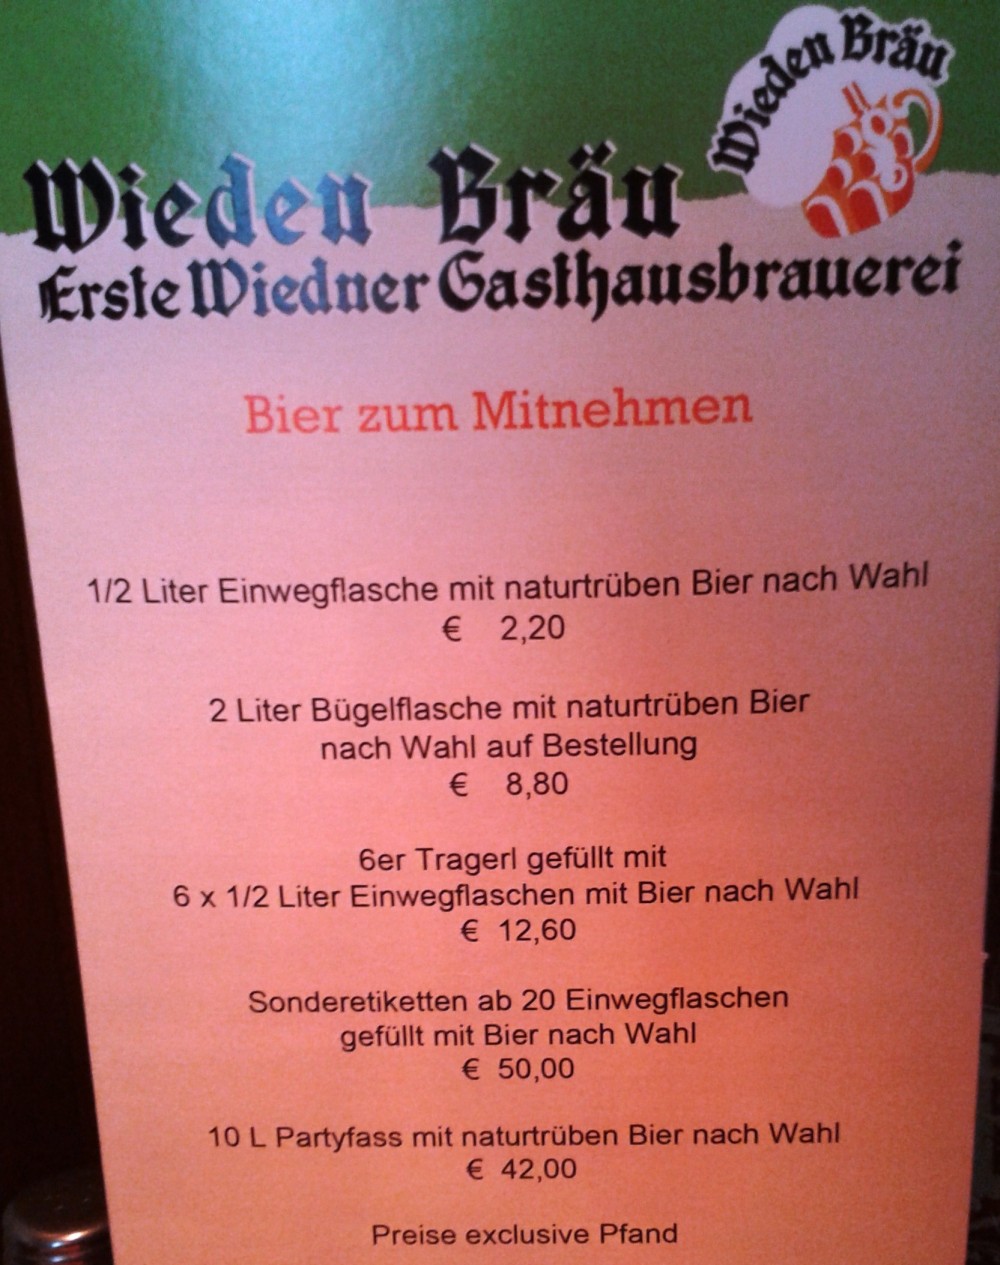 Wieden Bräu Bier zum Mitnehmen - Wieden Bräu - Wien